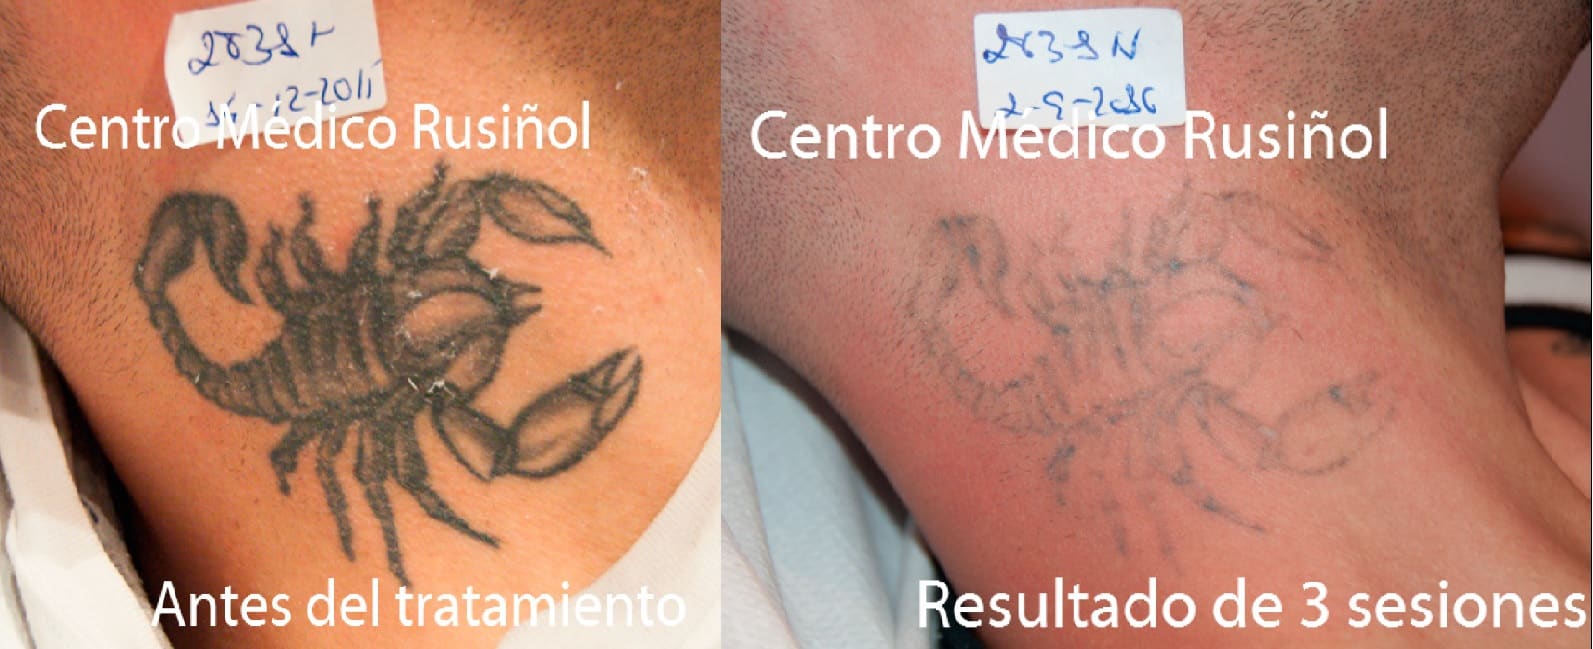 tatuaje-cuello-3s-ayd